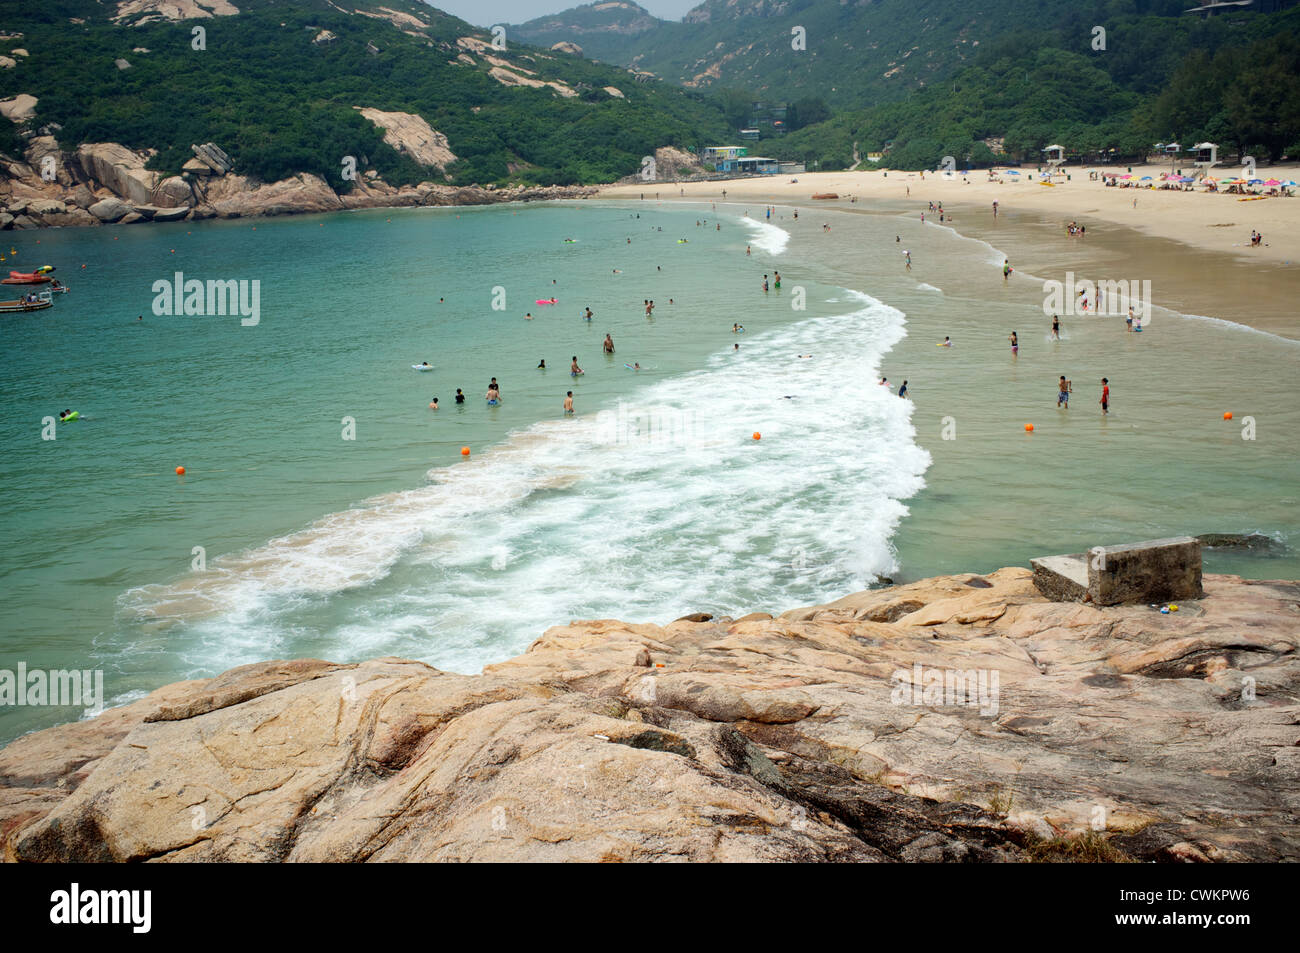 Spiaggia di Shek O , un villaggio sulla spiaggia situato sulla parte sud-orientale dell'Isola di Hong Kong in Hong Kong. 27-Aug-2012 Foto Stock